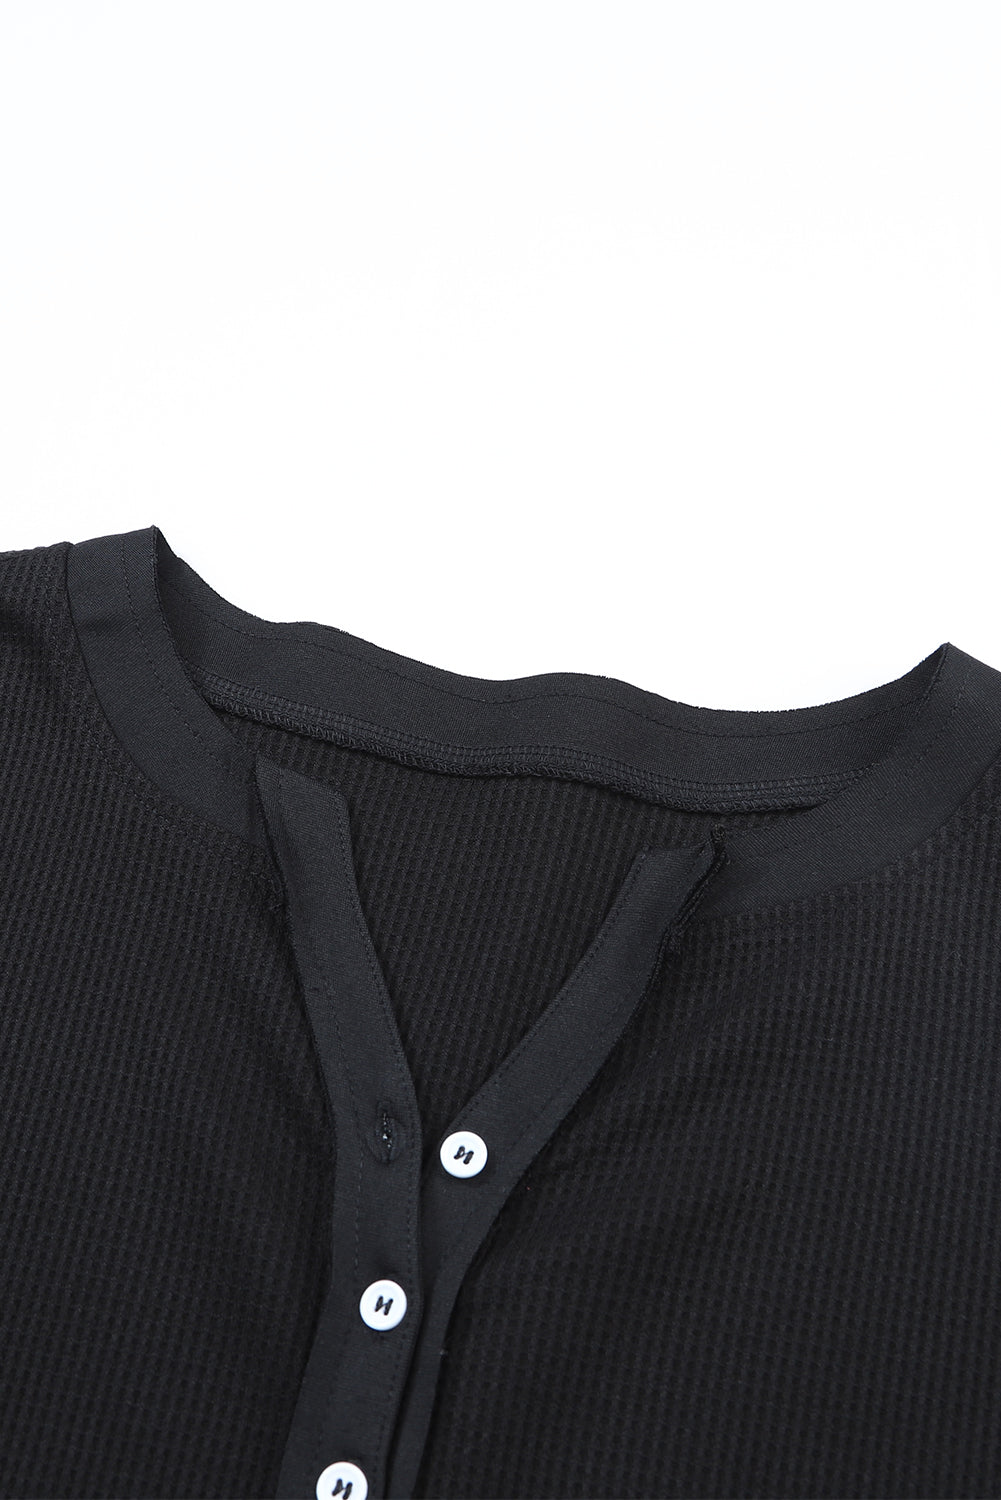 Crna majica s obrubljenim izrezom od vafla